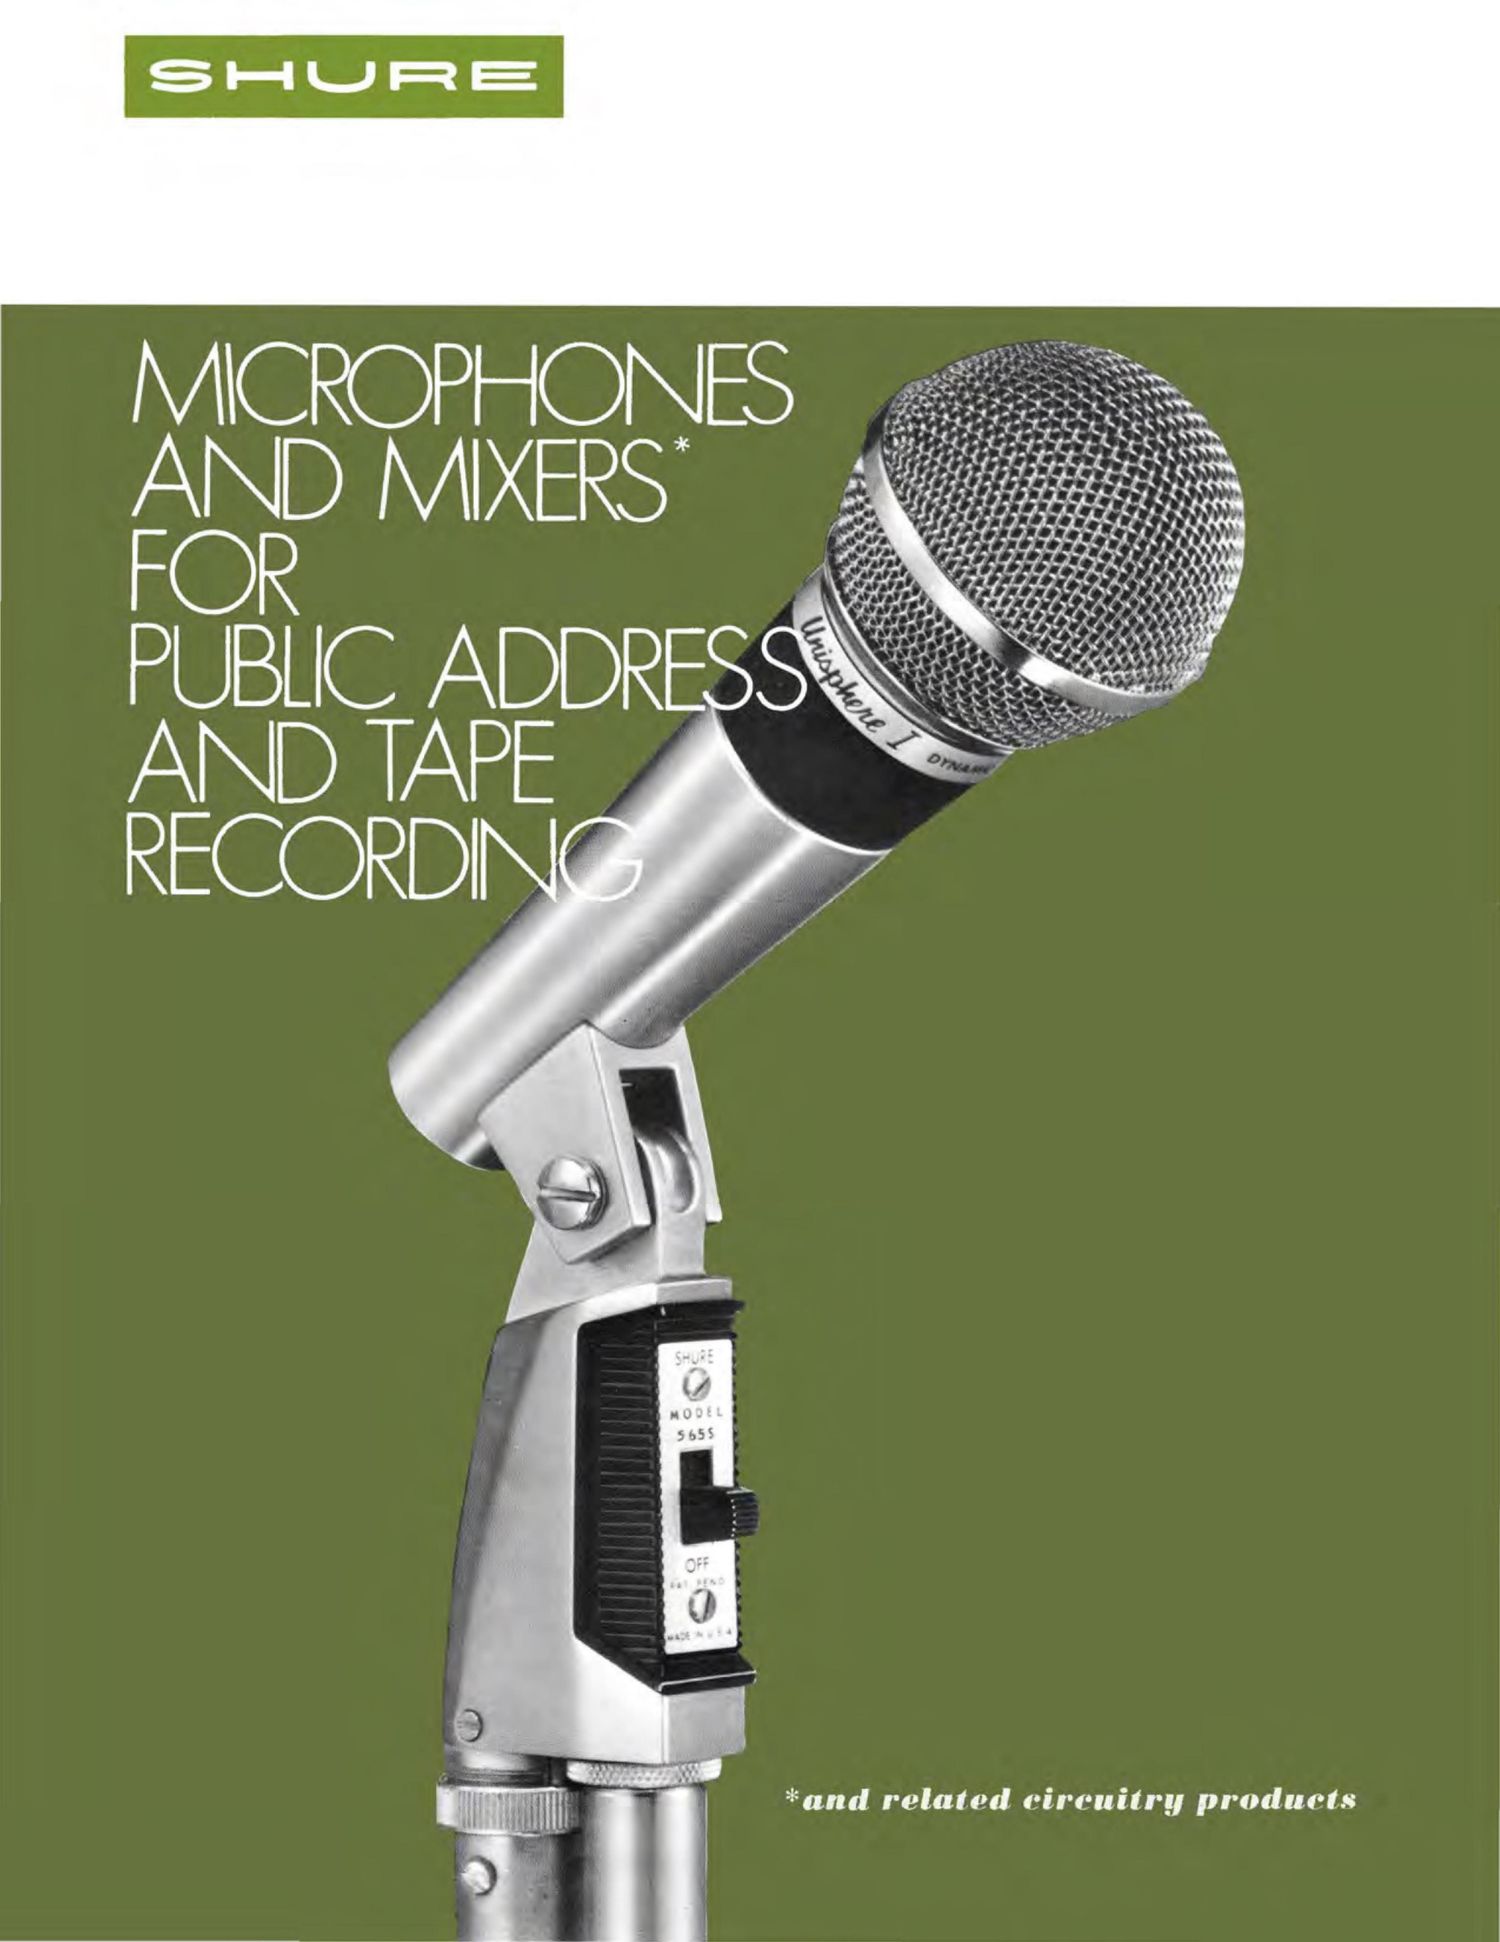 shure 1969 catalogue microphones public address